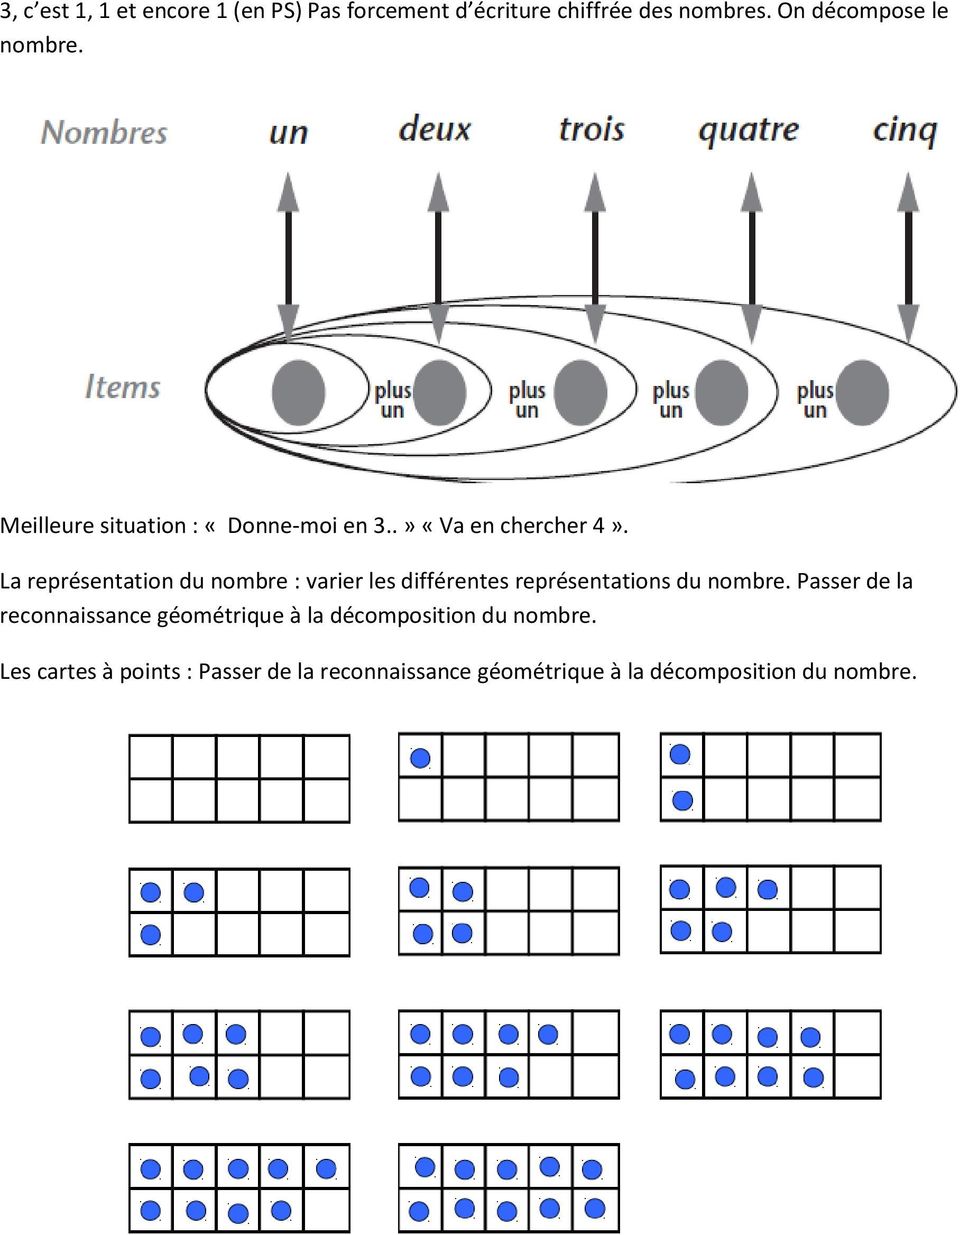 La représentation du nombre : varier les différentes représentations du nombre.